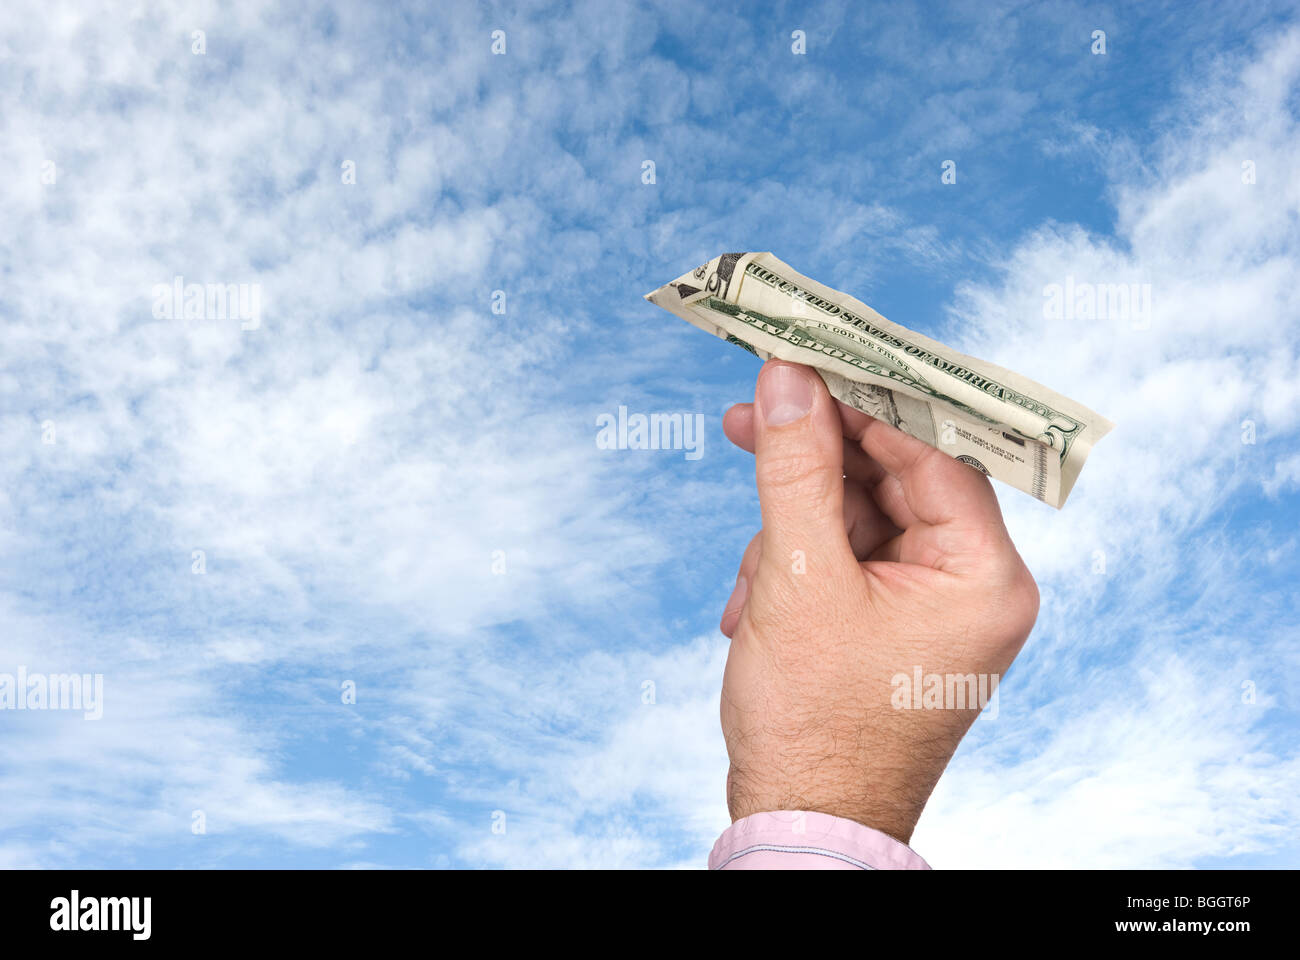 Un homme jette un avion en papier fait d'un billet de cinq dollars dans un ciel bleu avec des nuages blancs, gonflées. Banque D'Images